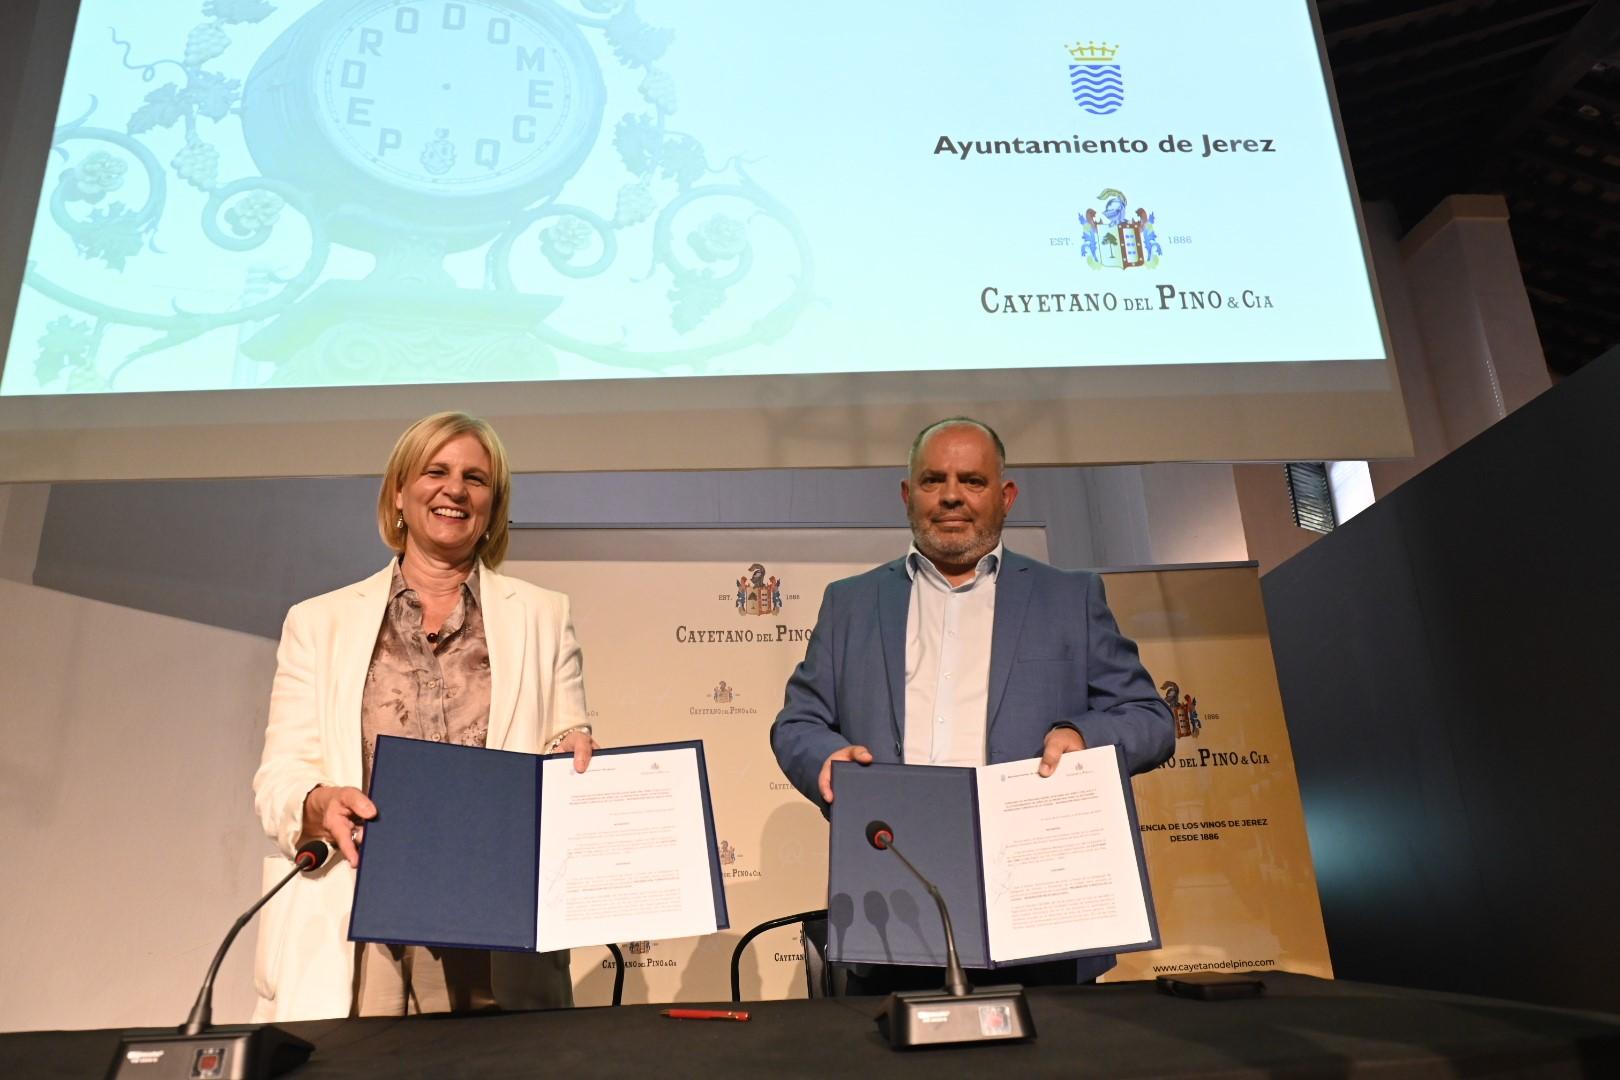 Ayuntamiento y Cayetano del Pino firman el acuerdo para la restauración y recuperación del Reloj del Gallo Azul de Jerez